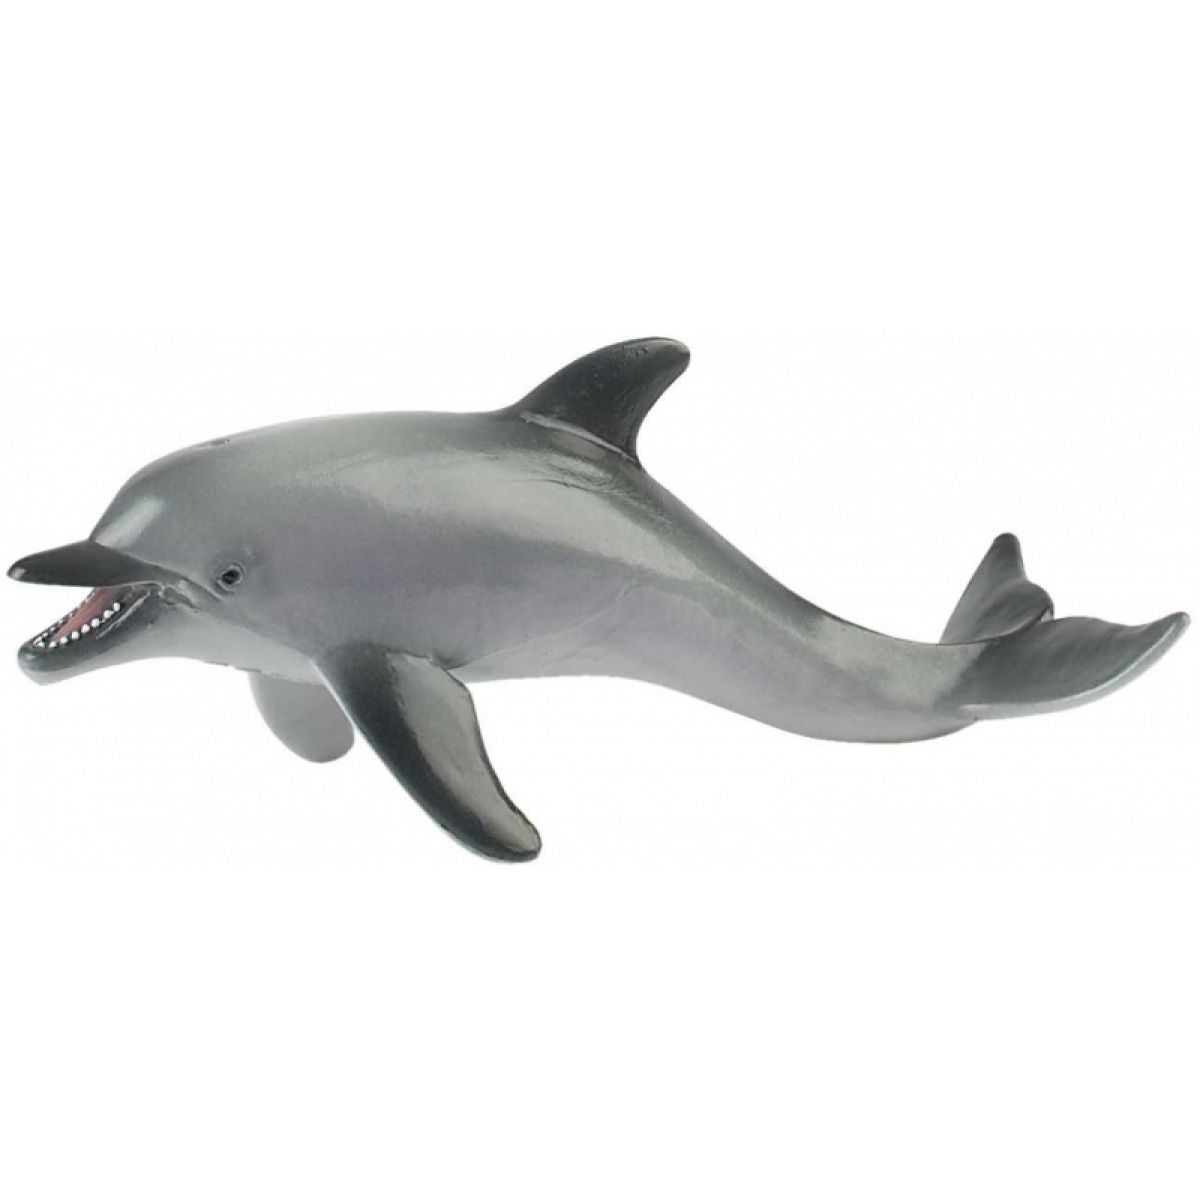 Bullyland Delfín sivý